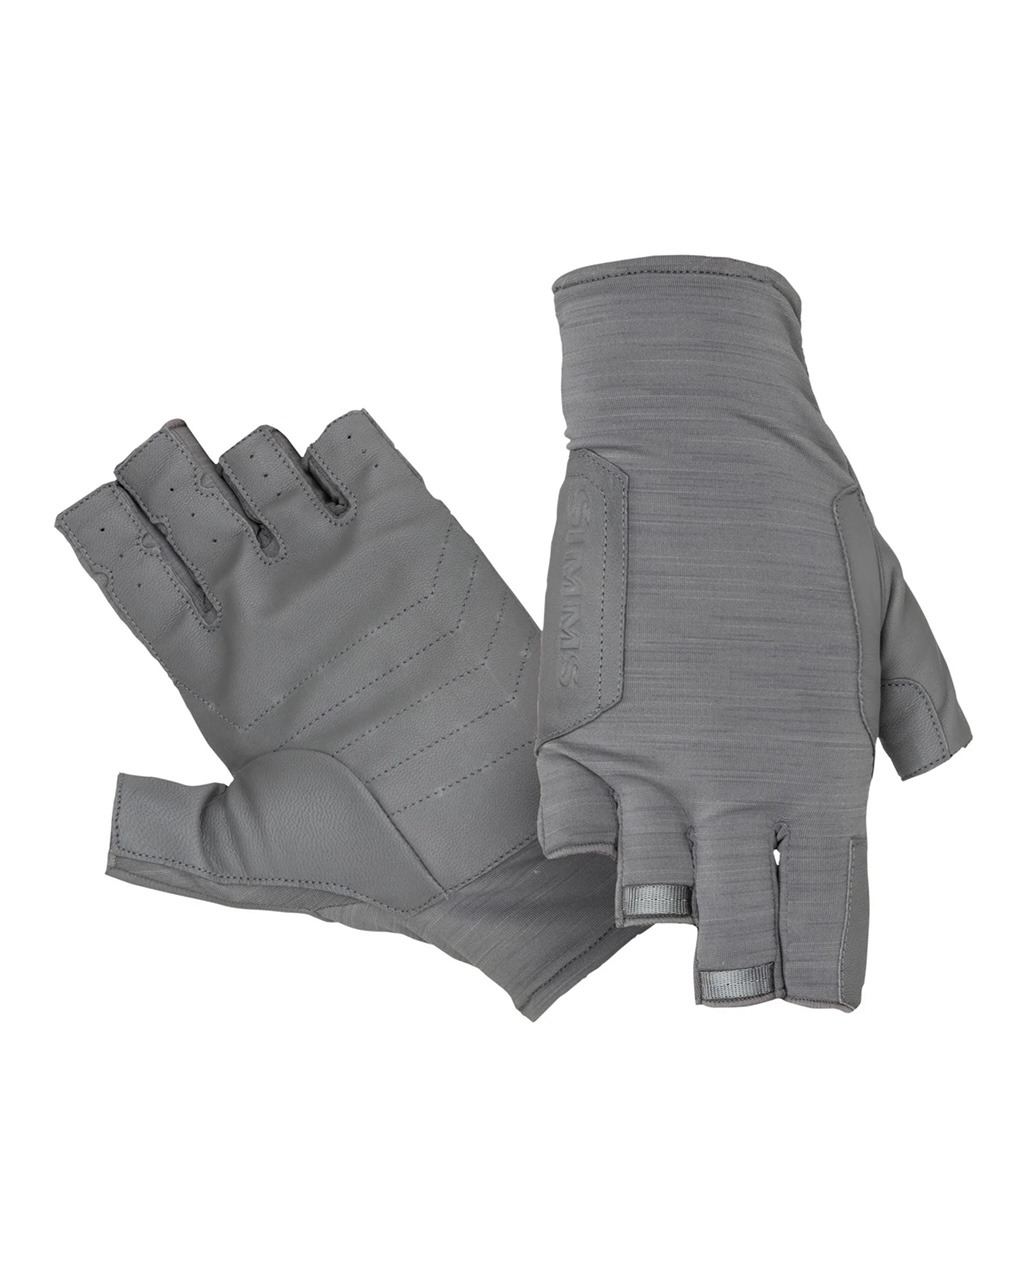 Simms Solarflex Guide Glove - Flow Camo - Large